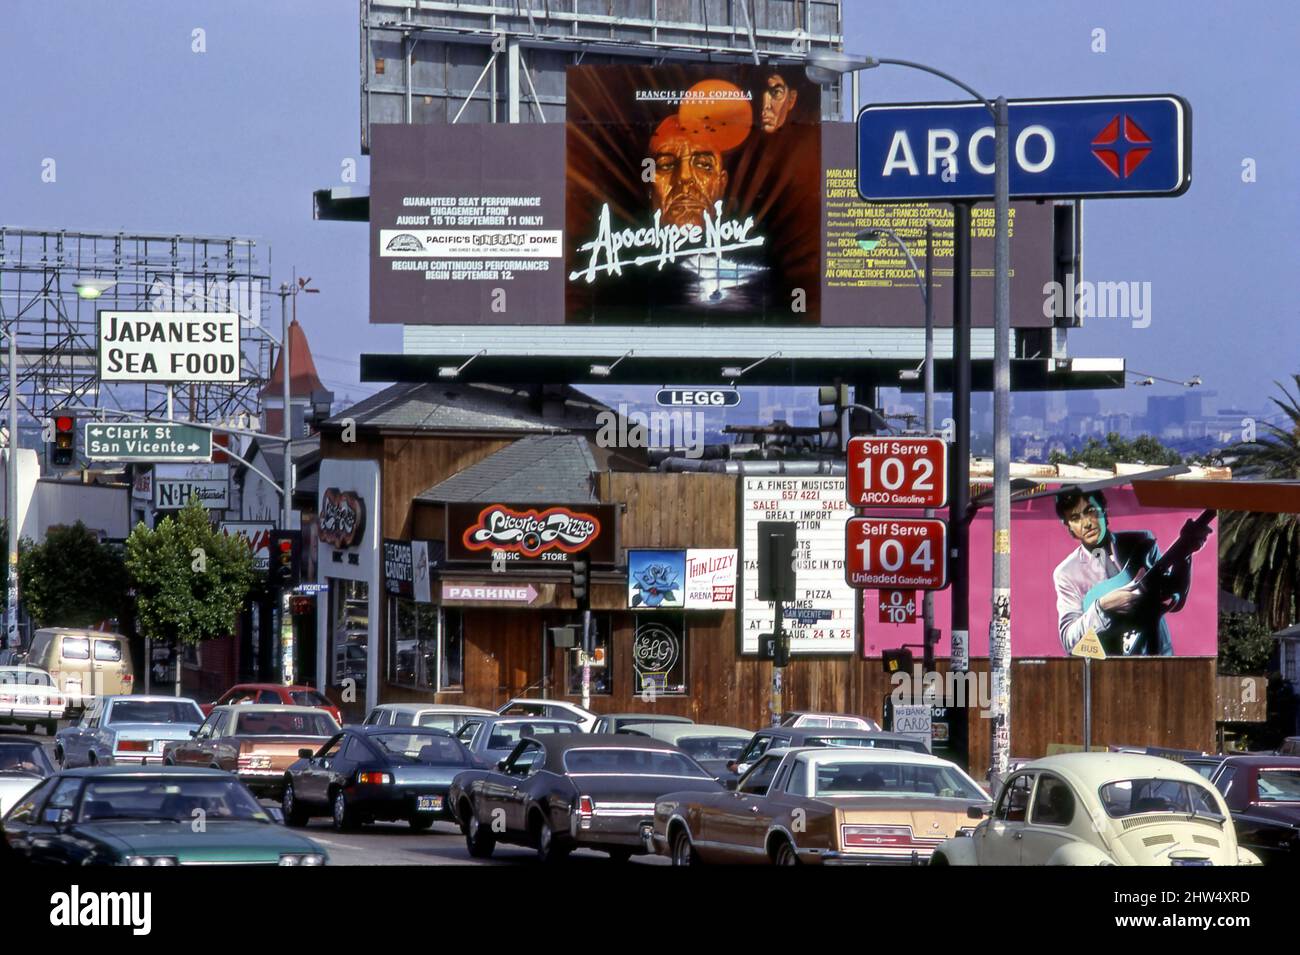 Affissioni per il film Apocalypse ora con Marlon Brando oltre Licoirce Pizza negozio di dischi sulla Sunset Strip con traffico e gas in vendita a un dollaro nel 1979, LOS ANGELES, CA Foto Stock